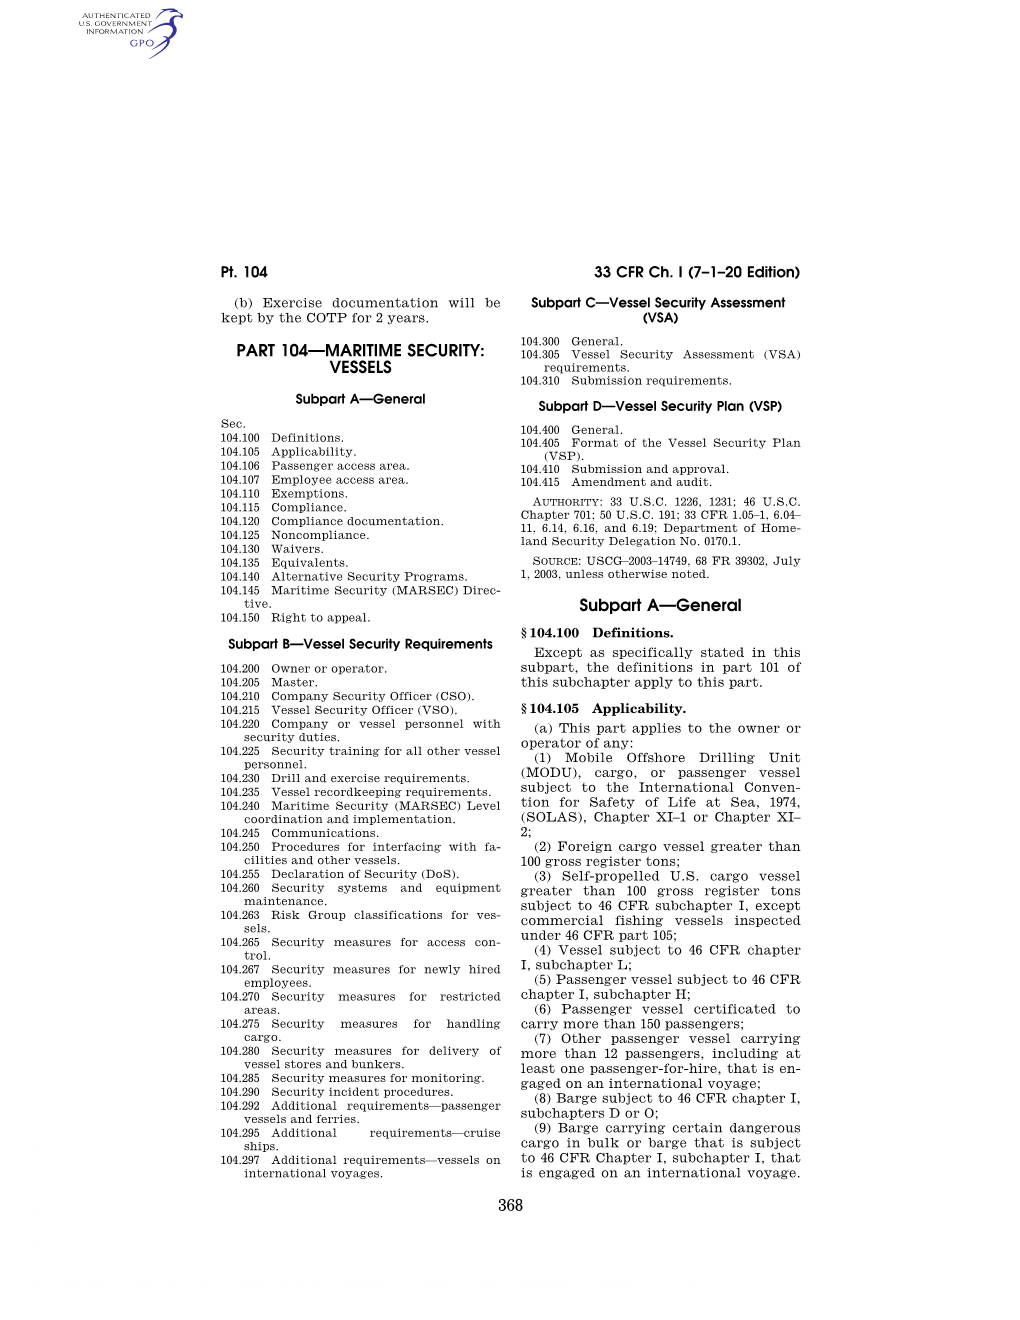 33 CFR Ch. I (7–1–20 Edition) § 104.260